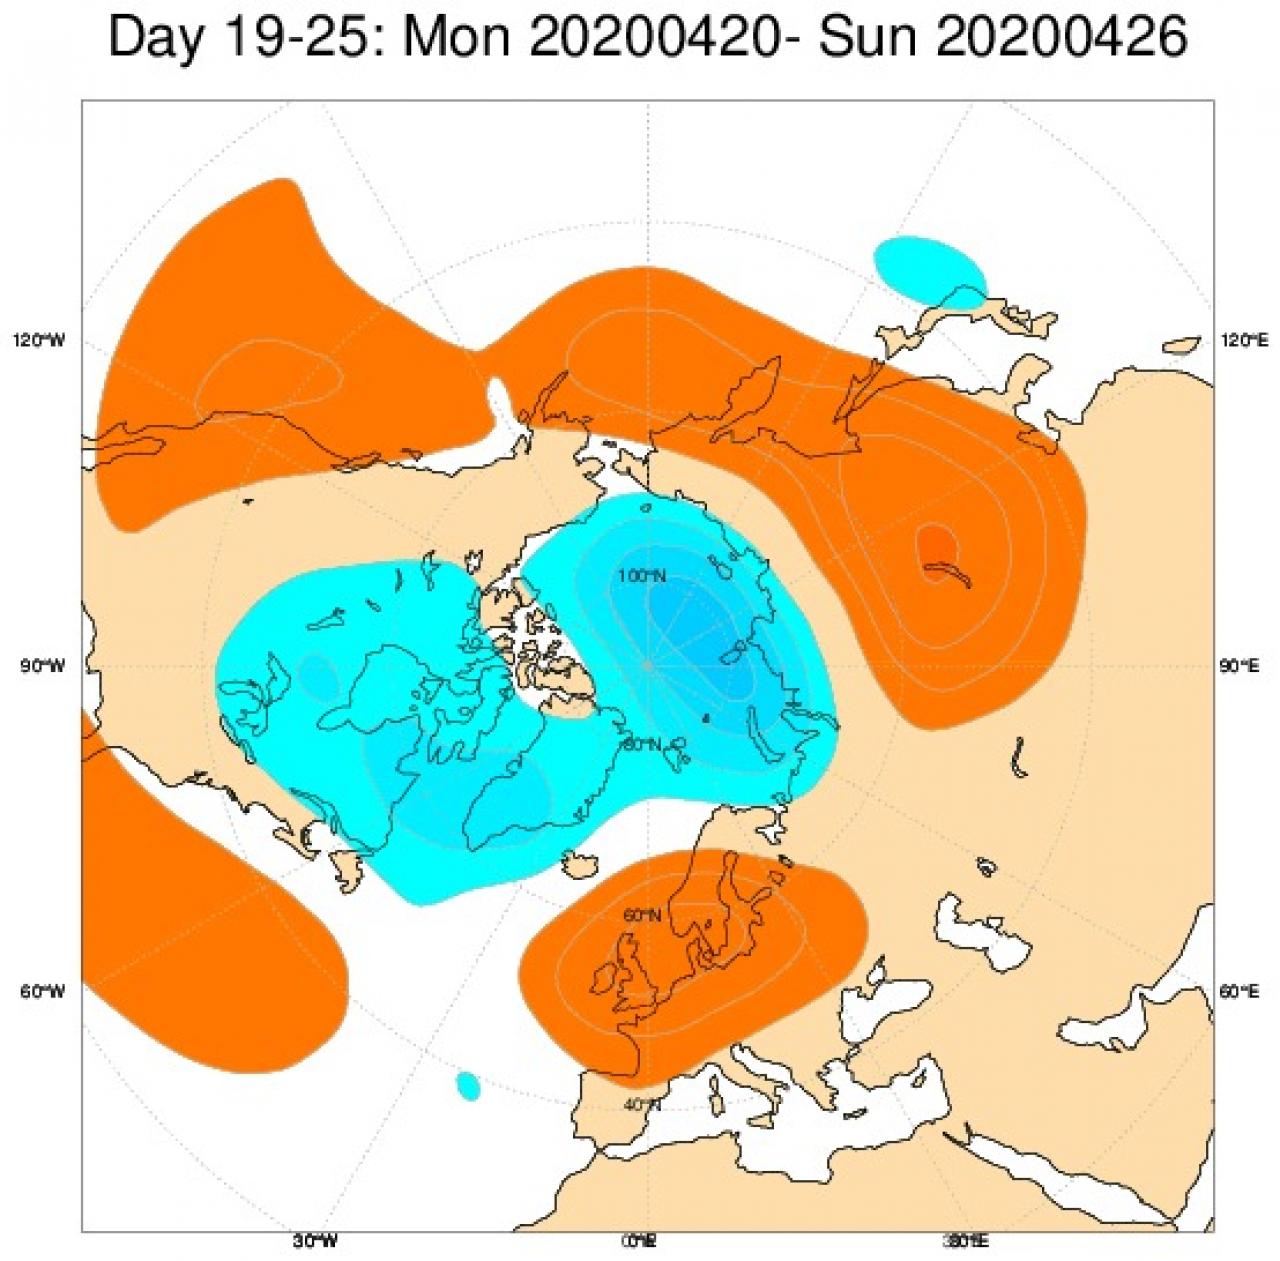  Tendenza meteo: le anomalie di geopotenziale previste nel periodo 20-26 aprile secondo il modello ECMWF